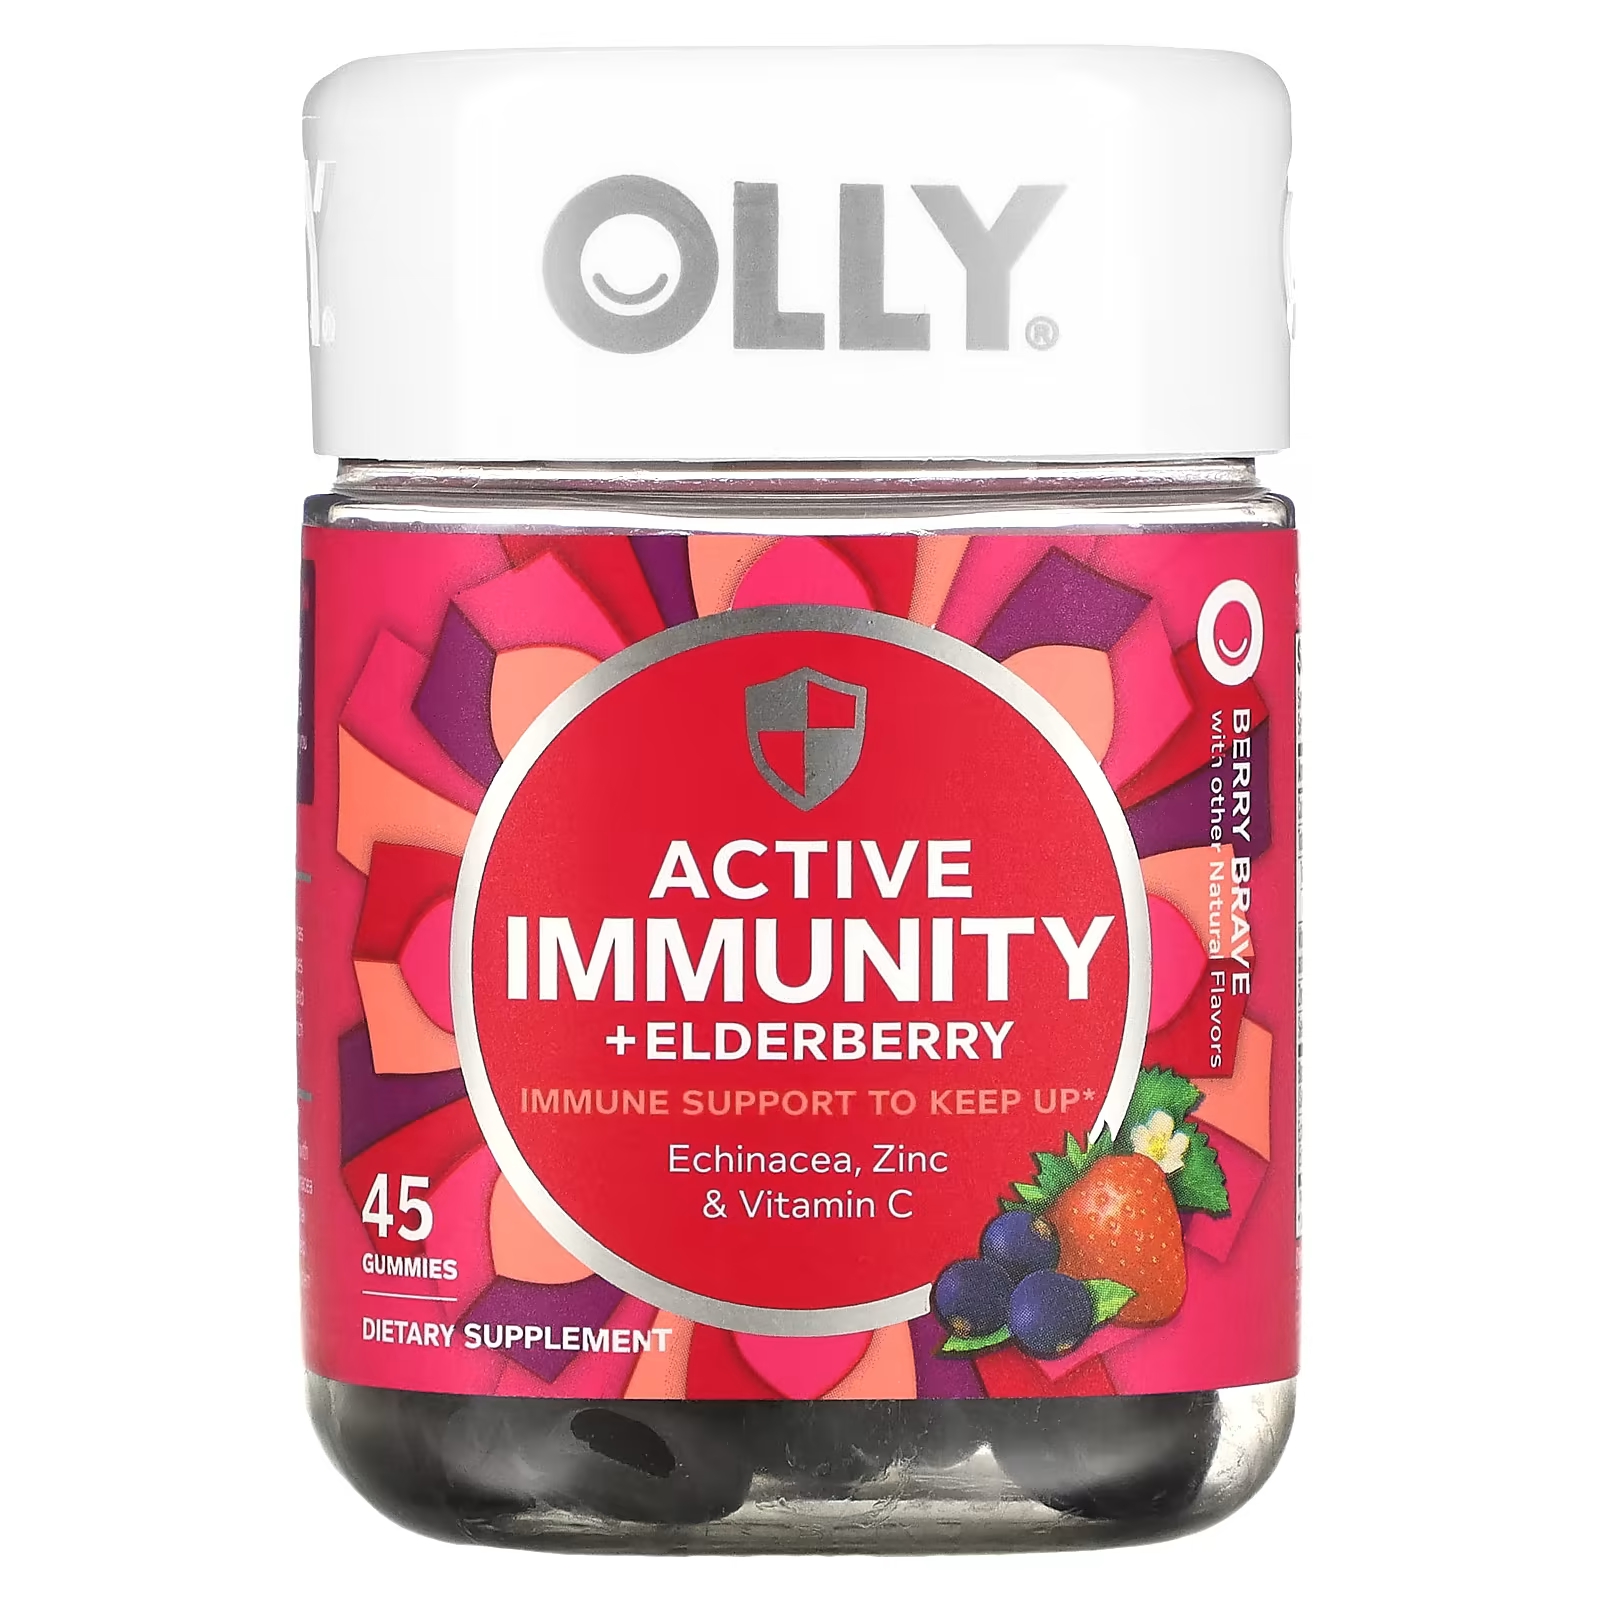 Пищевая добавка Olly Active Immunity + Elderberry Berry Brave, 45 жевательных таблеток